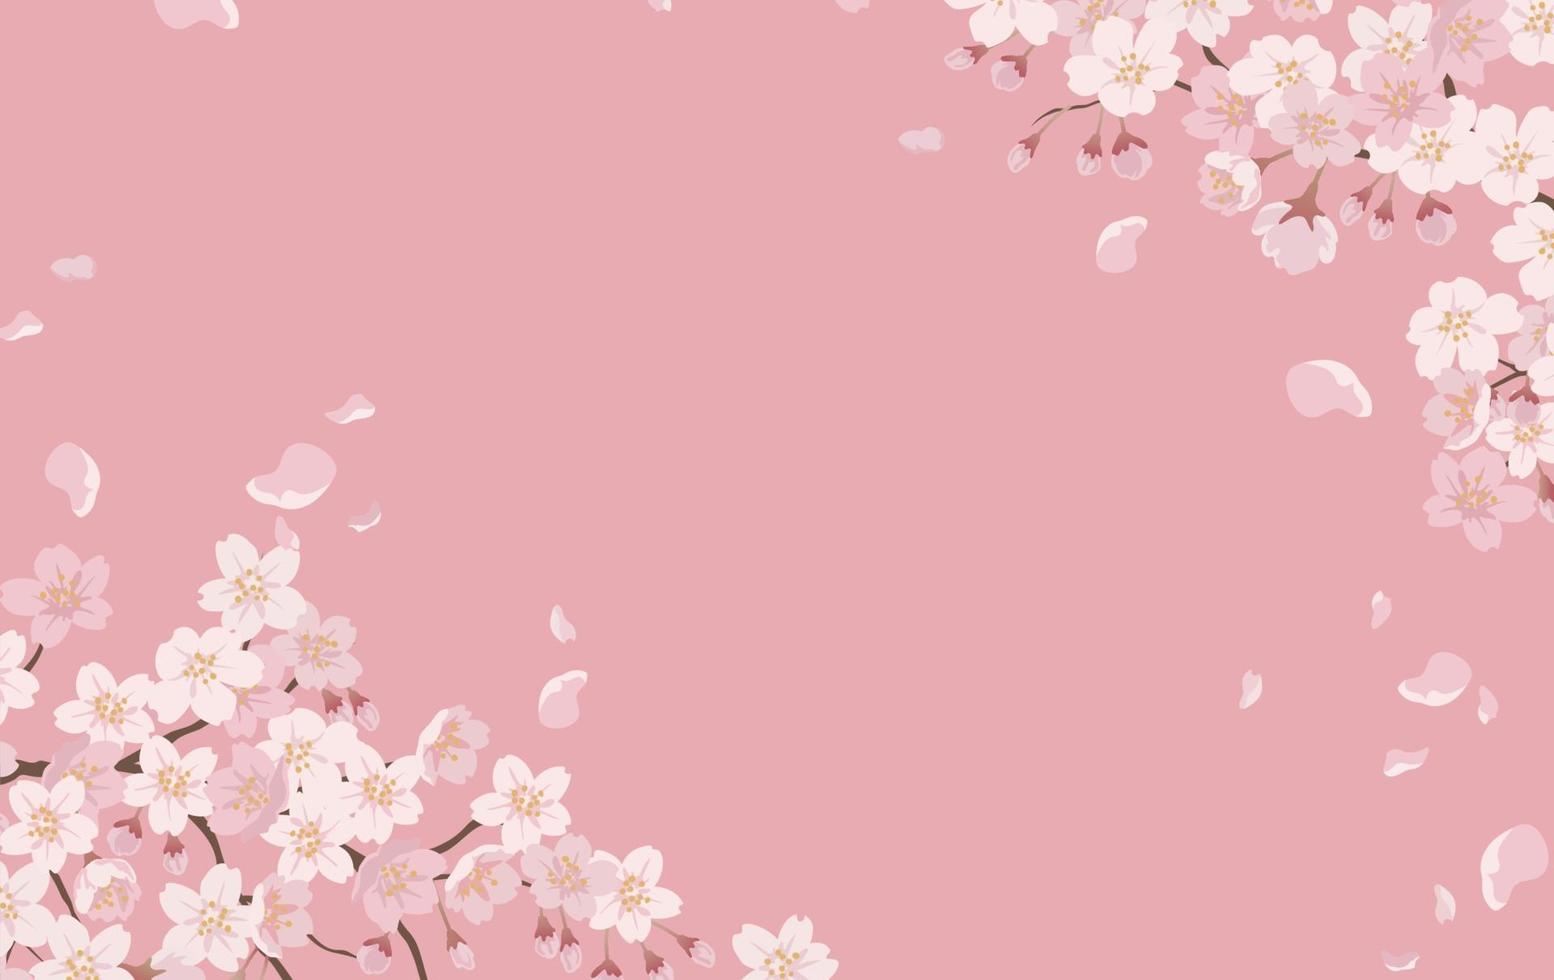 florale achtergrond met kersenbloesems in volle bloei op een roze achtergrond. vector